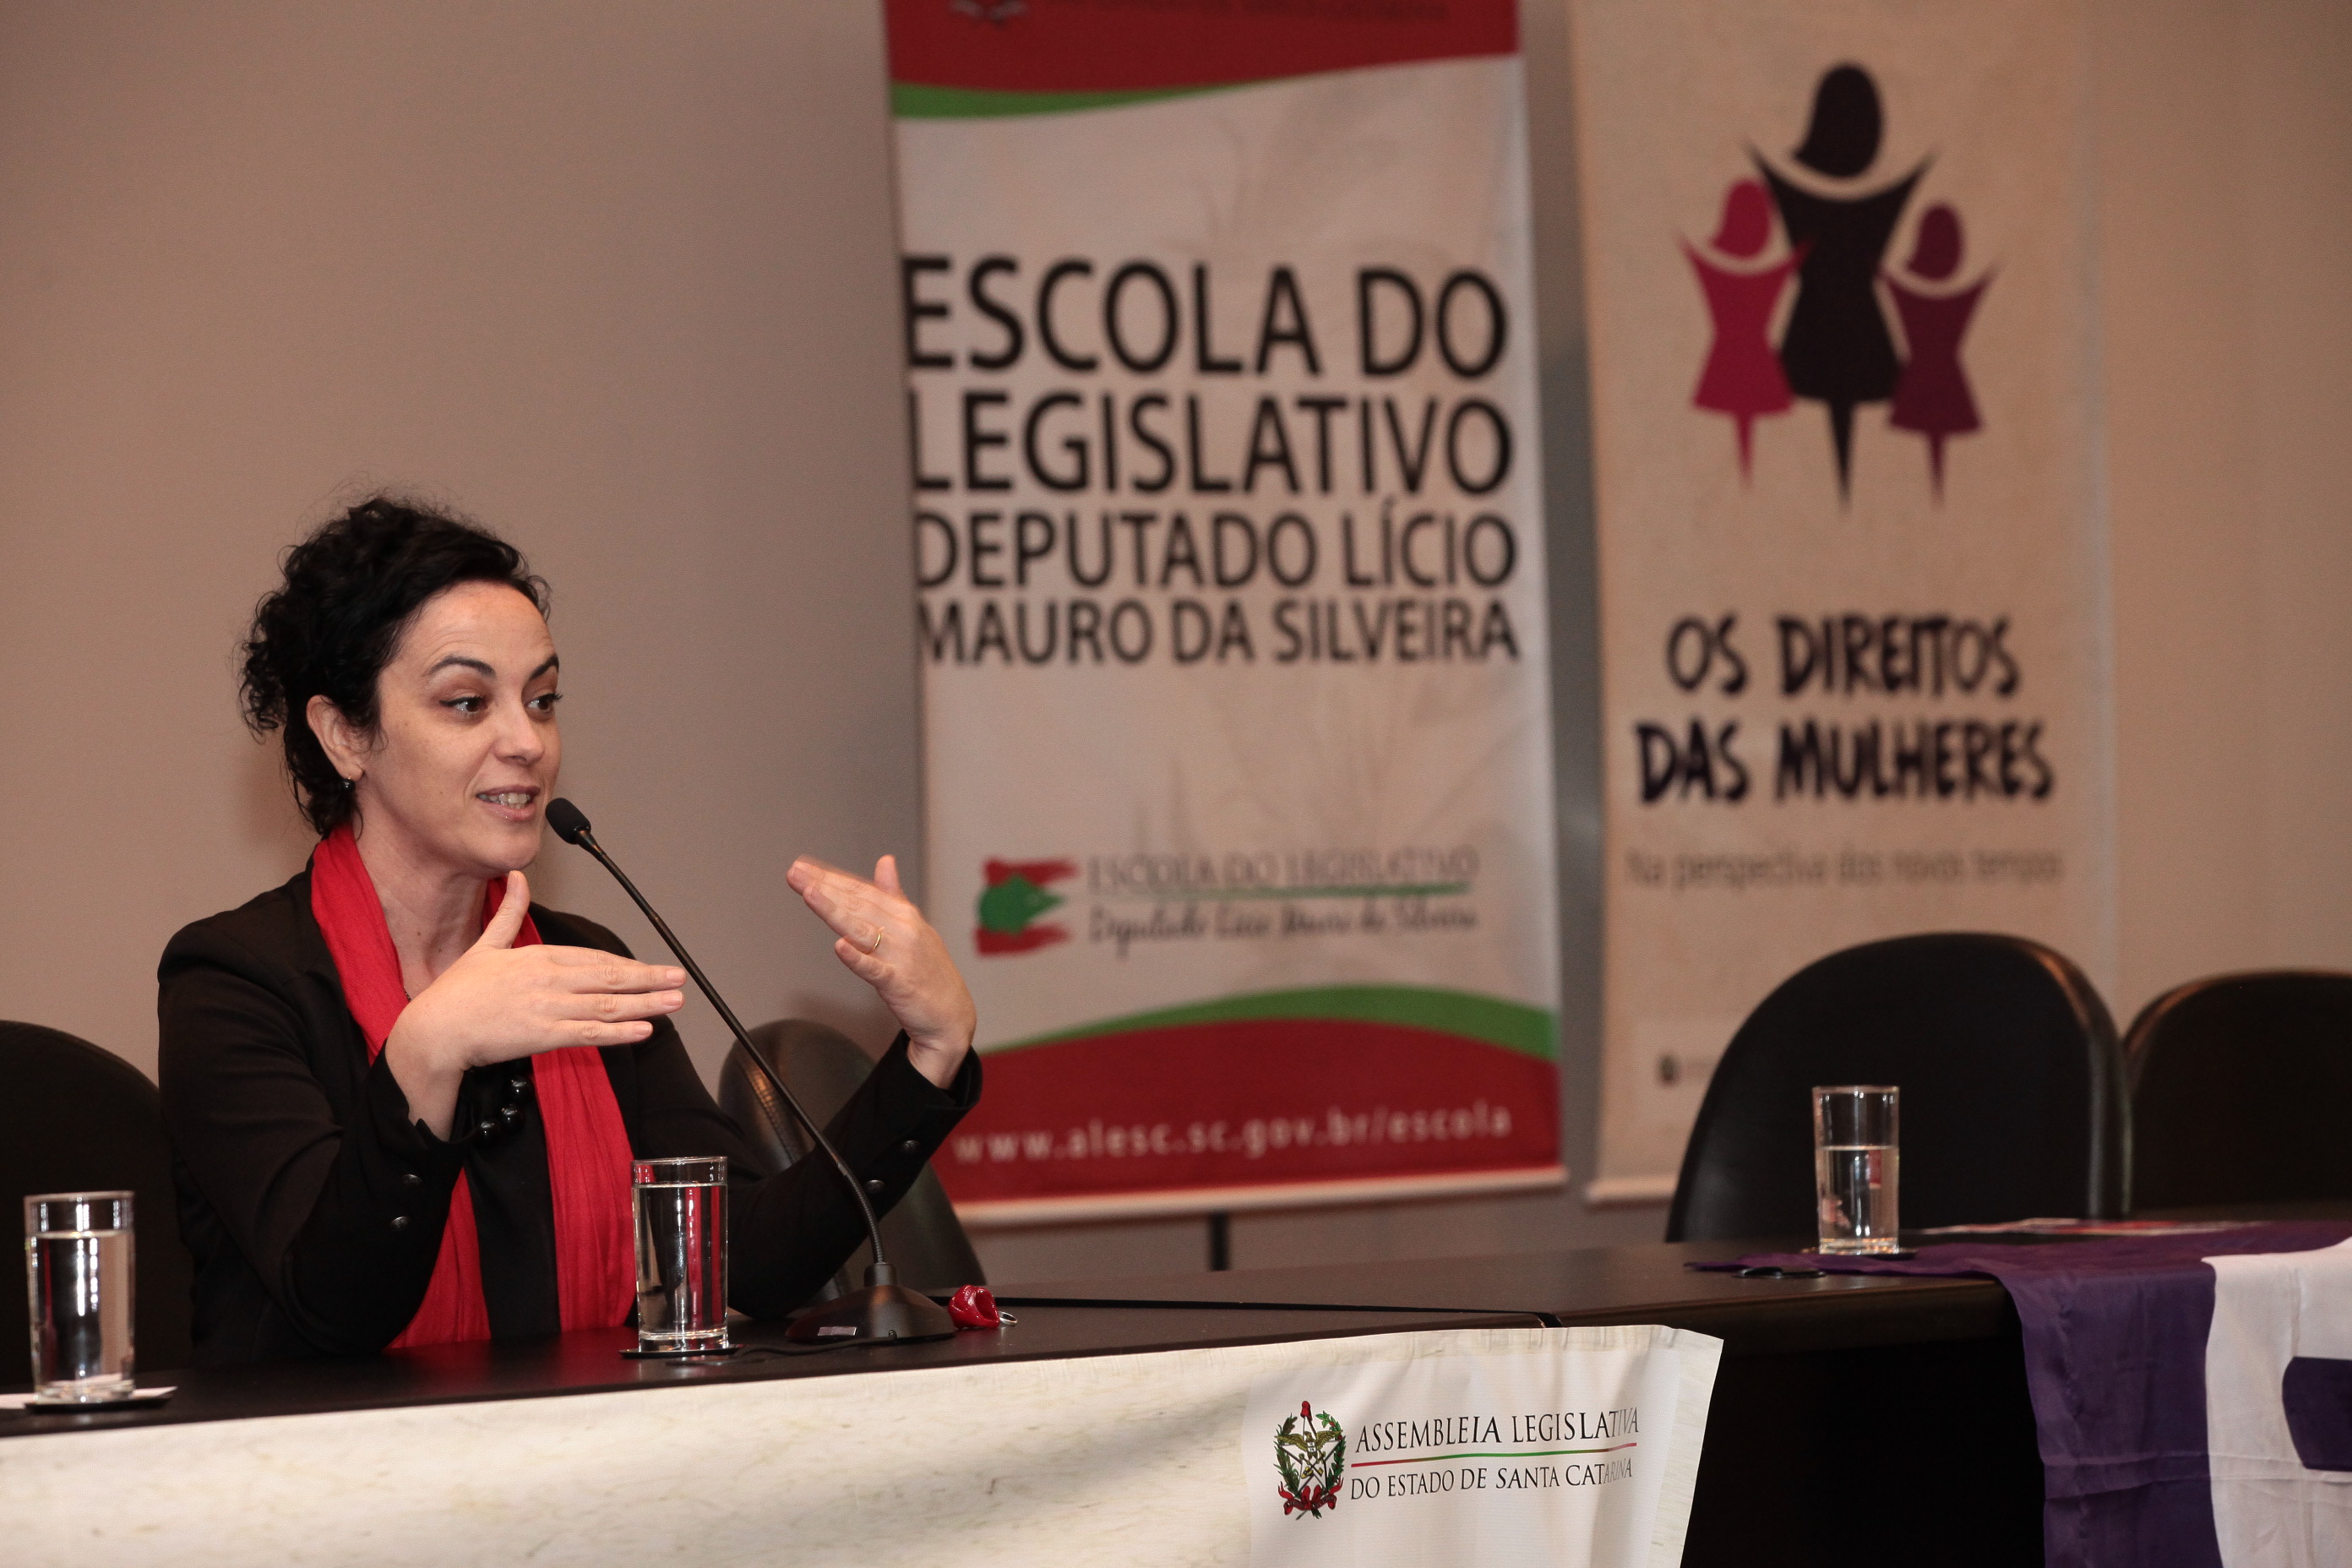 Márcia participou do seminário "Os Direitos das Mulheres”, nesta terça-feira (7)/Foto: Fábio Queiroz